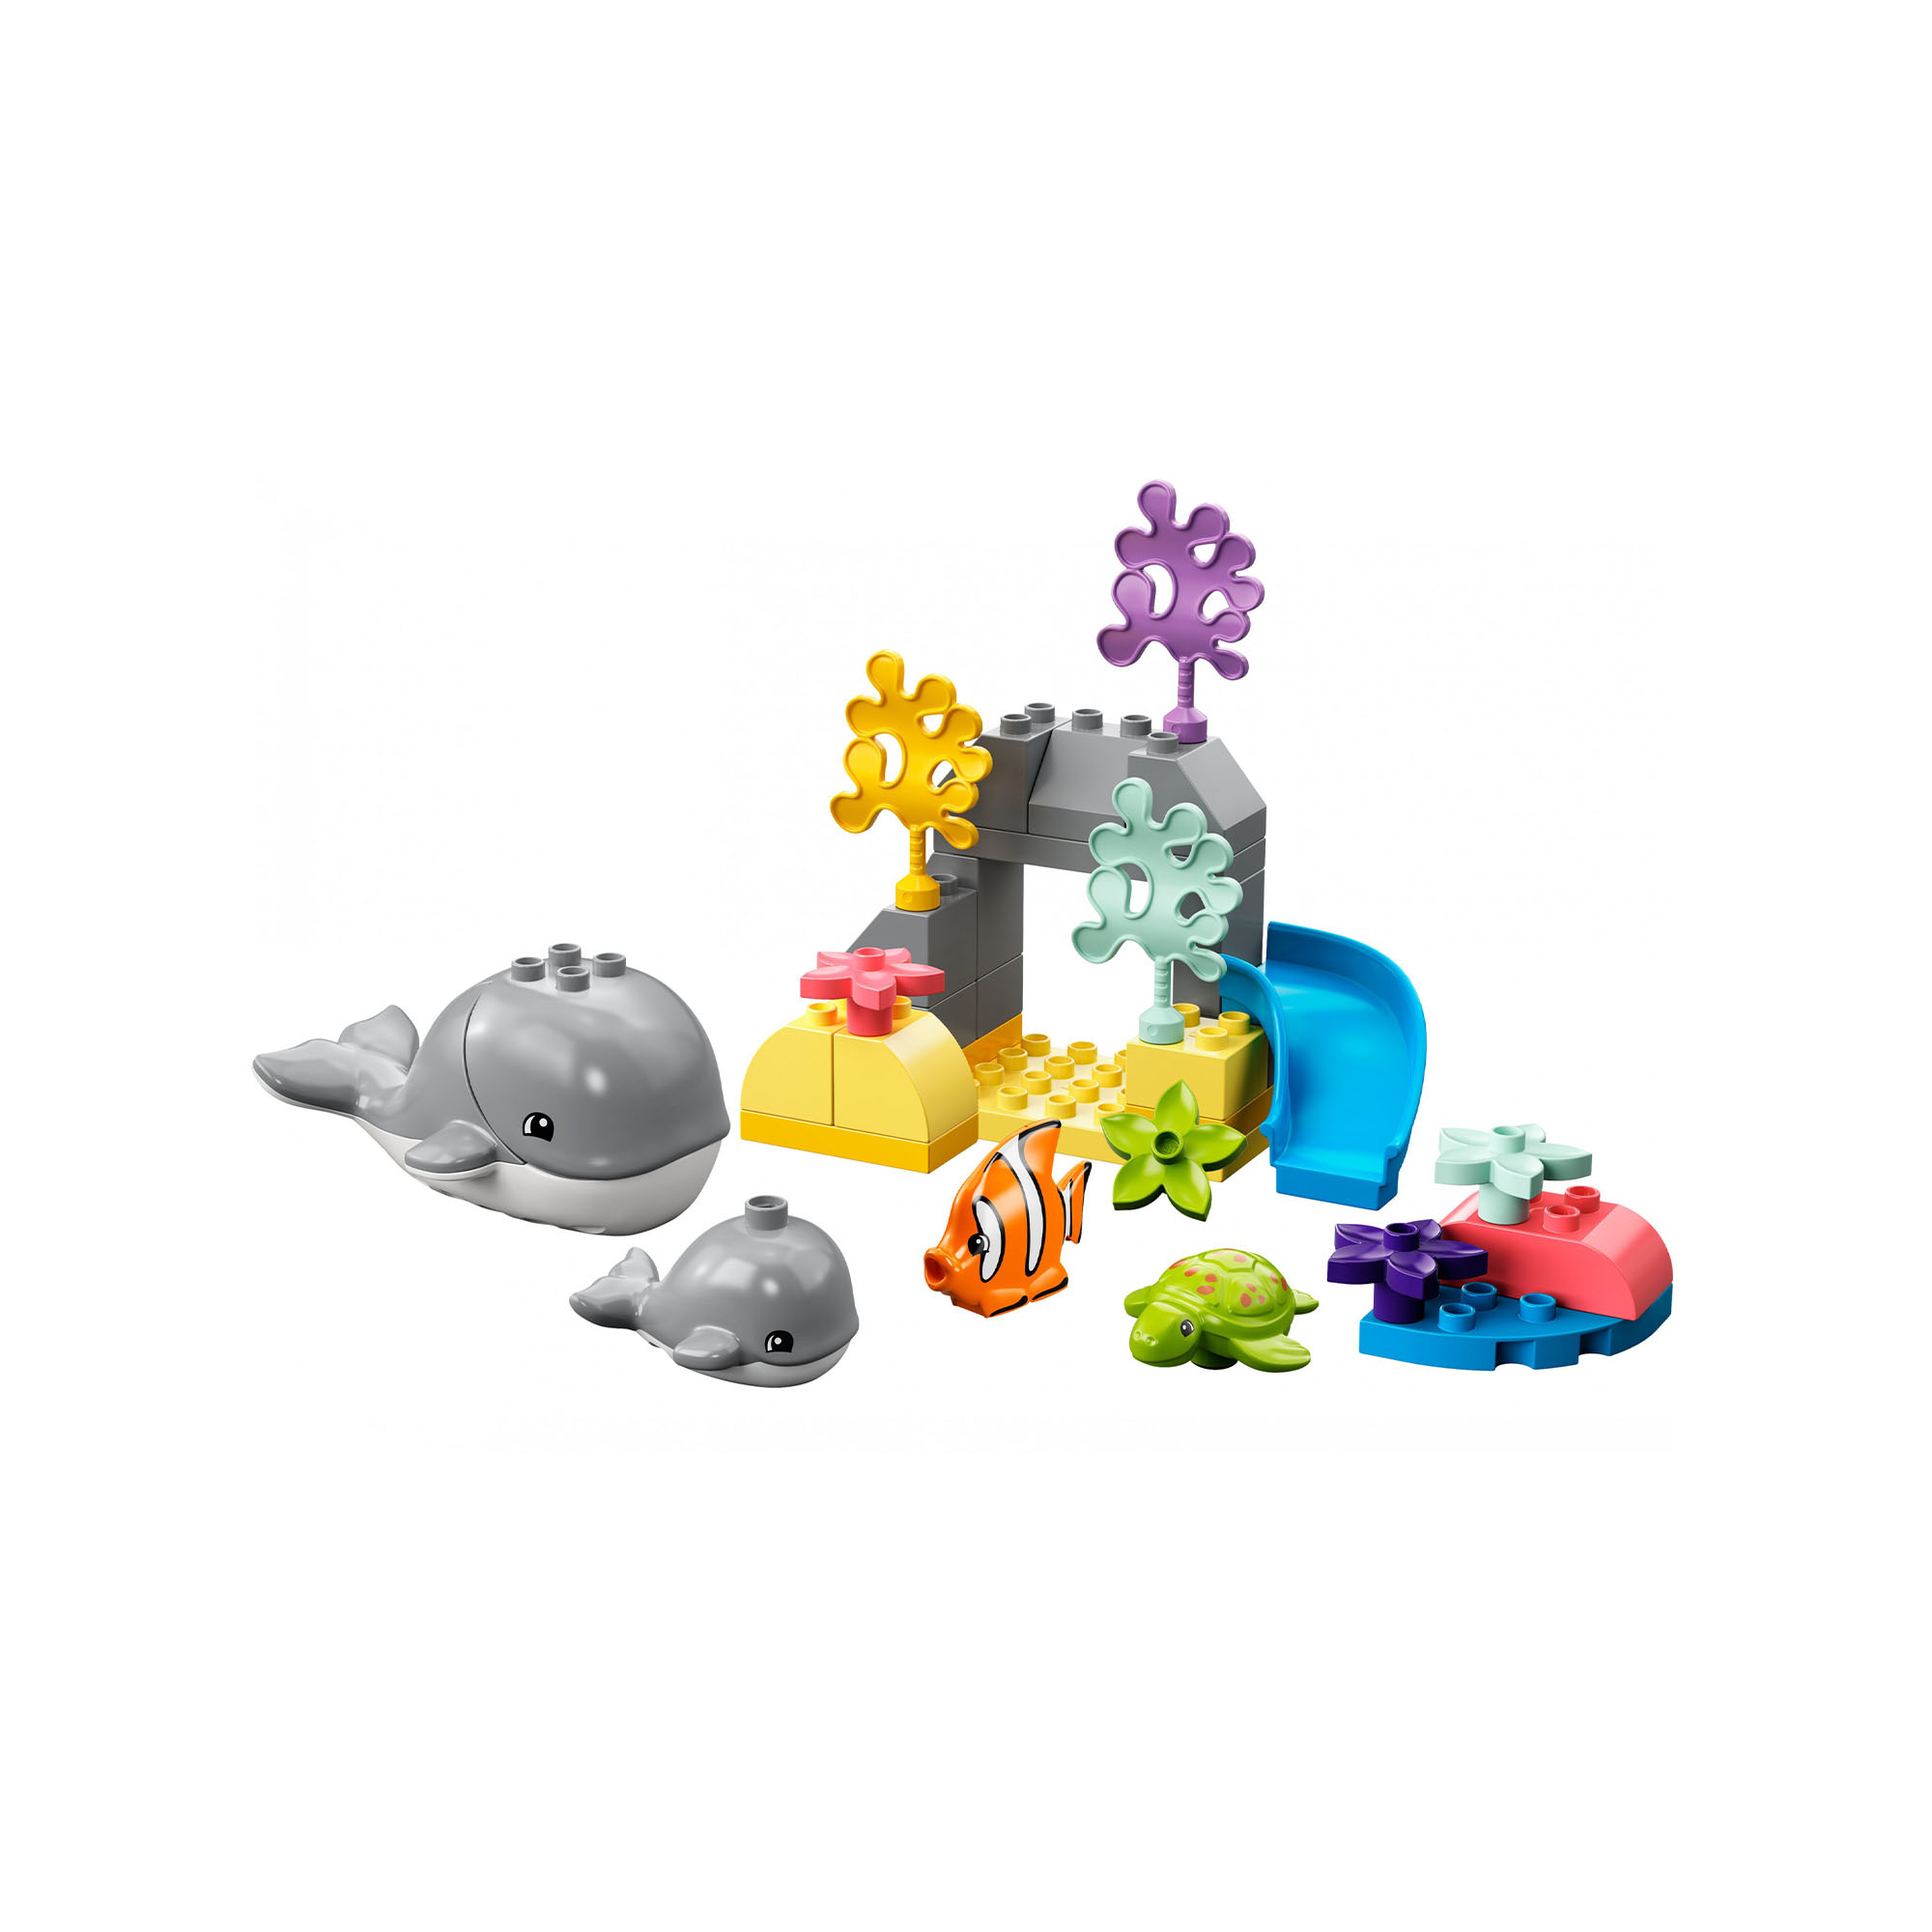 LEGO DUPLO Animali dell'Oceano, Giochi Educativi per Bambini dai 2 Anni in su c 10972, , large